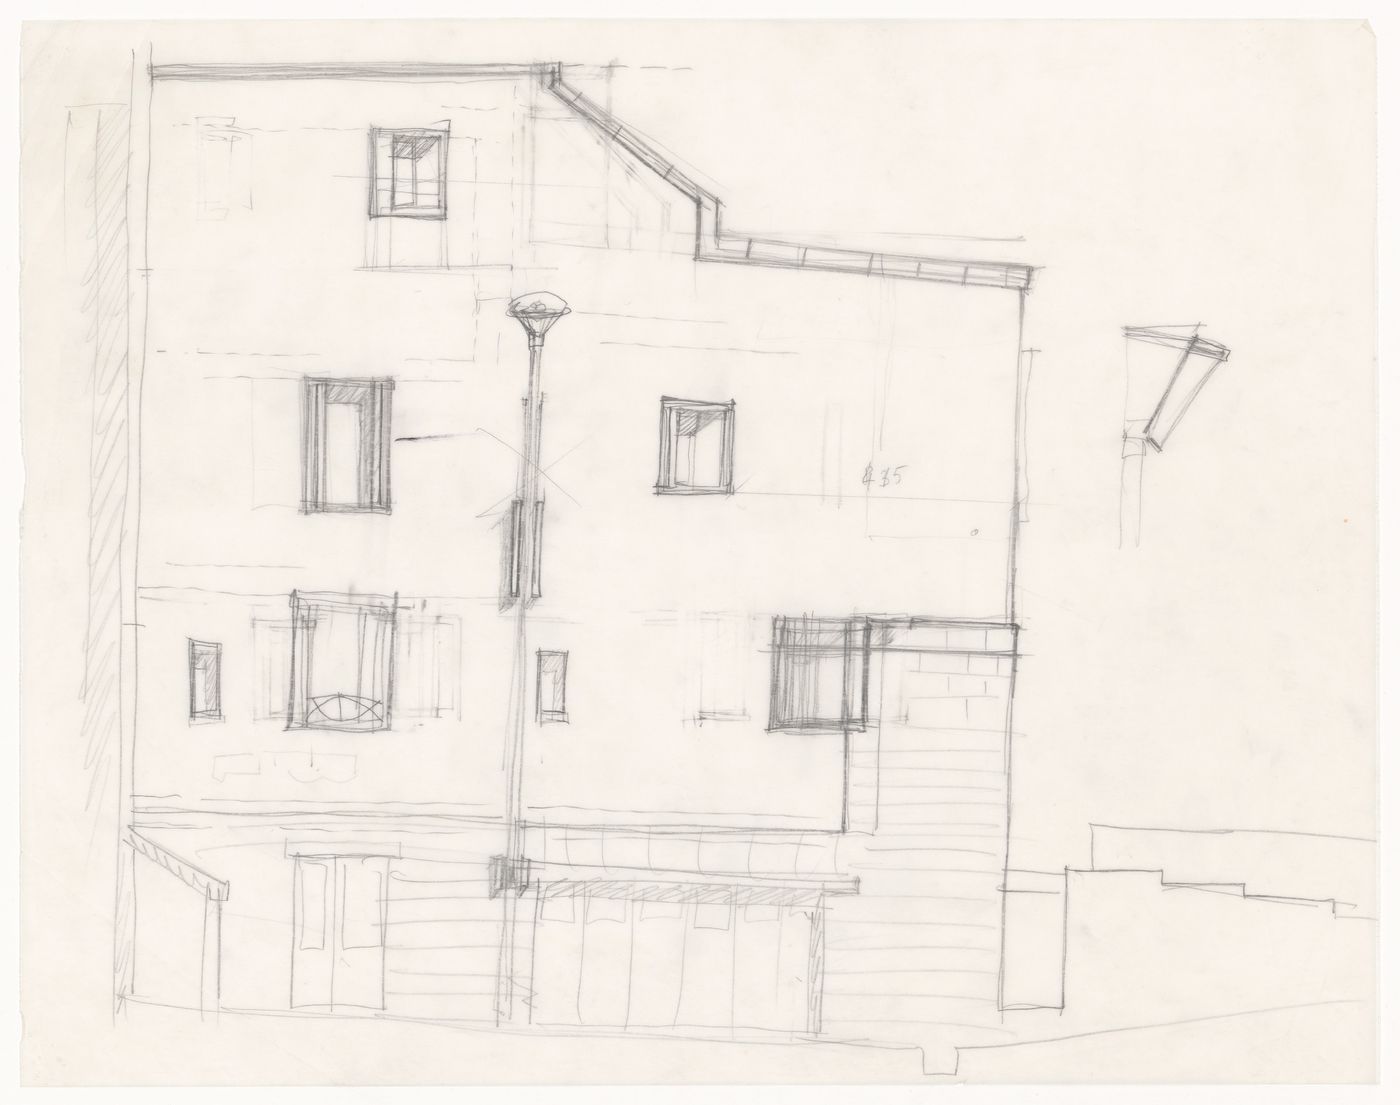 Elevation sketch for Casa Miggiano, Otranto, Italy